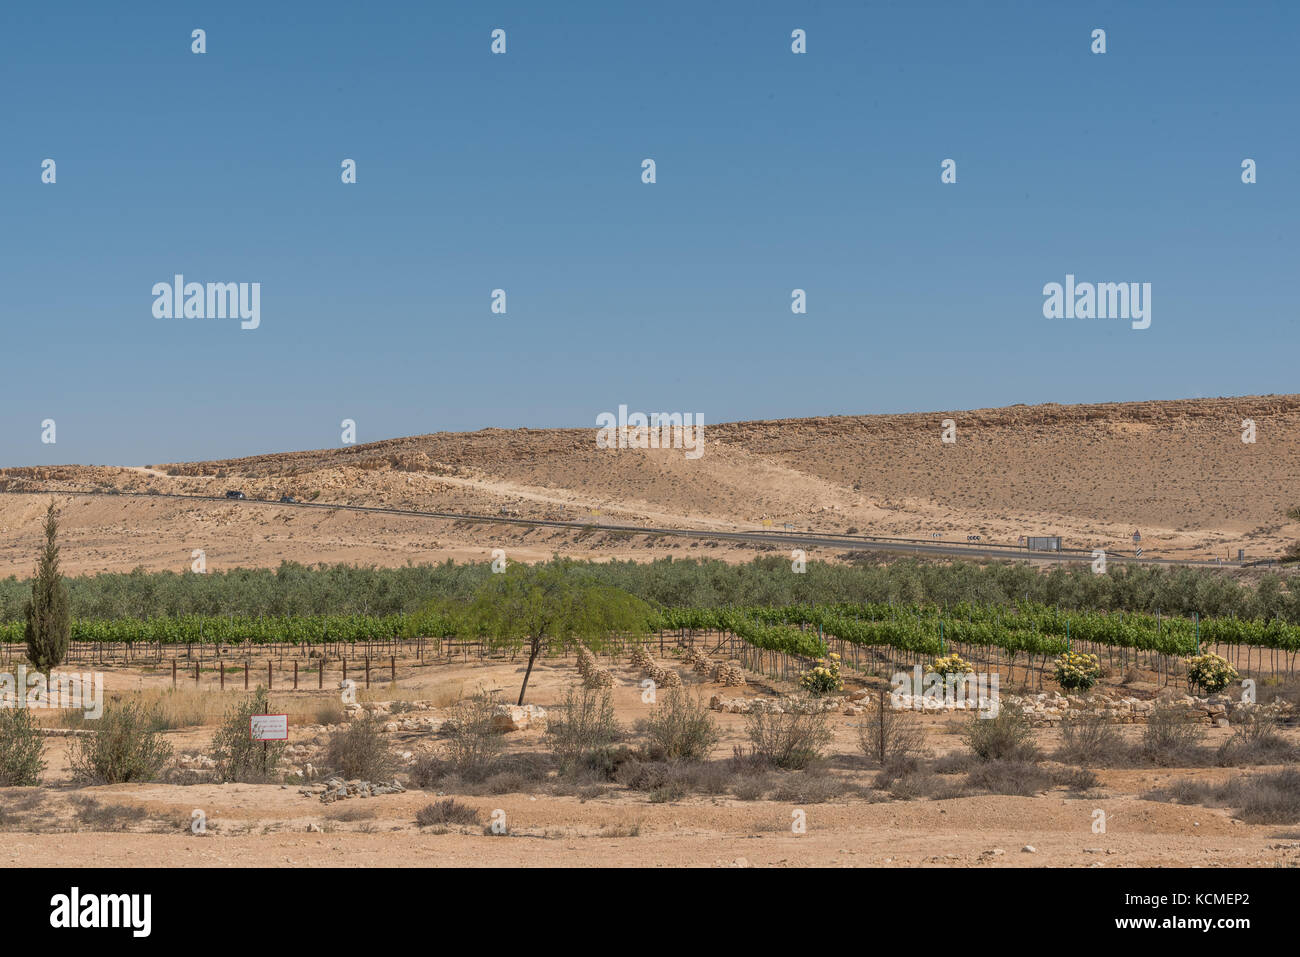 vneyards in the Negev desert, Israel Stock Photo